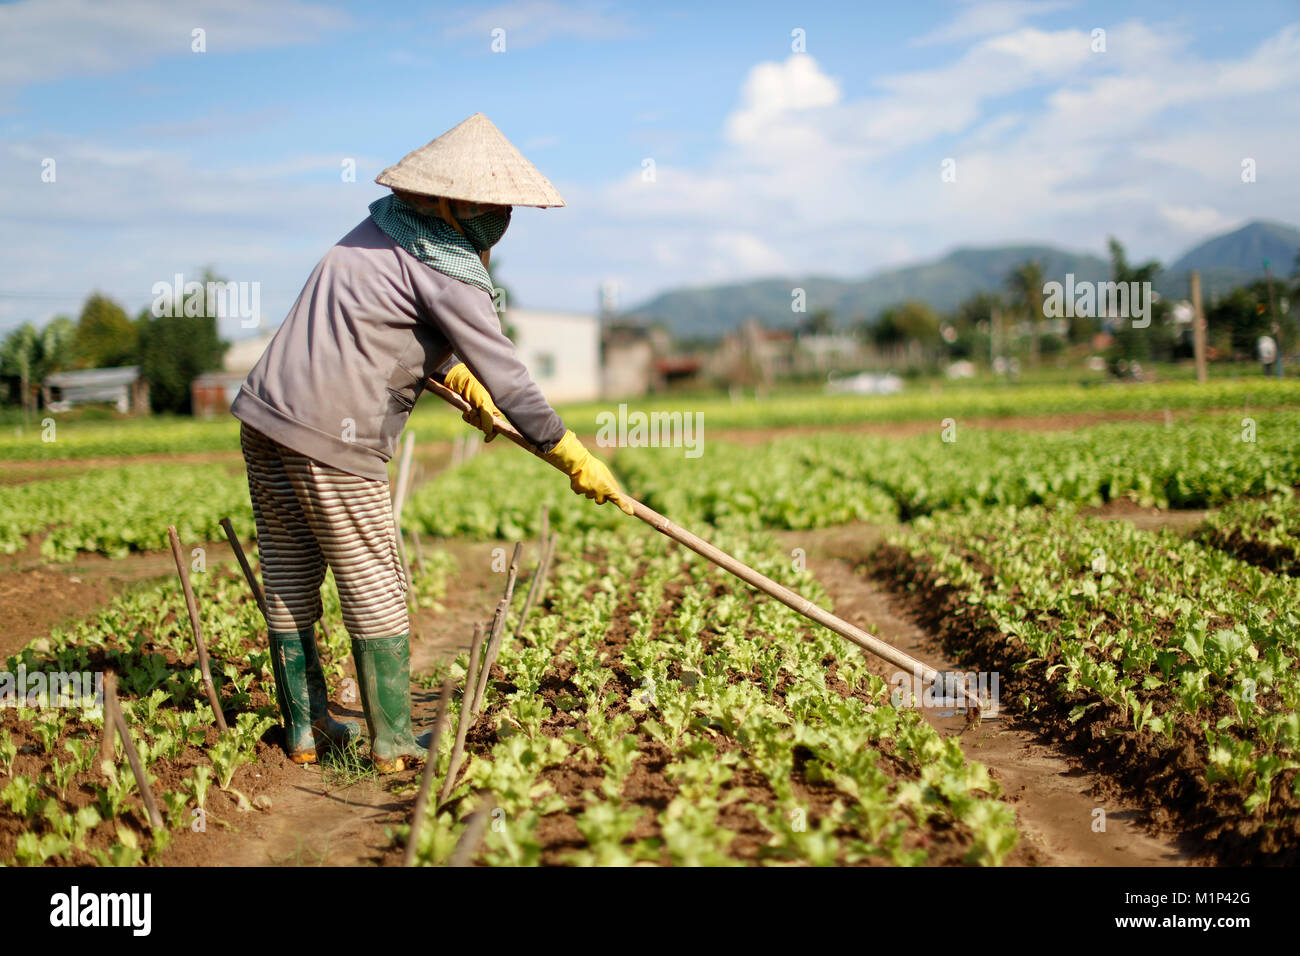 Vietnamienne travaillant dans un champ de laitue, Kon Tum, le Vietnam, l'Indochine, l'Asie du Sud-Est, Asie Banque D'Images